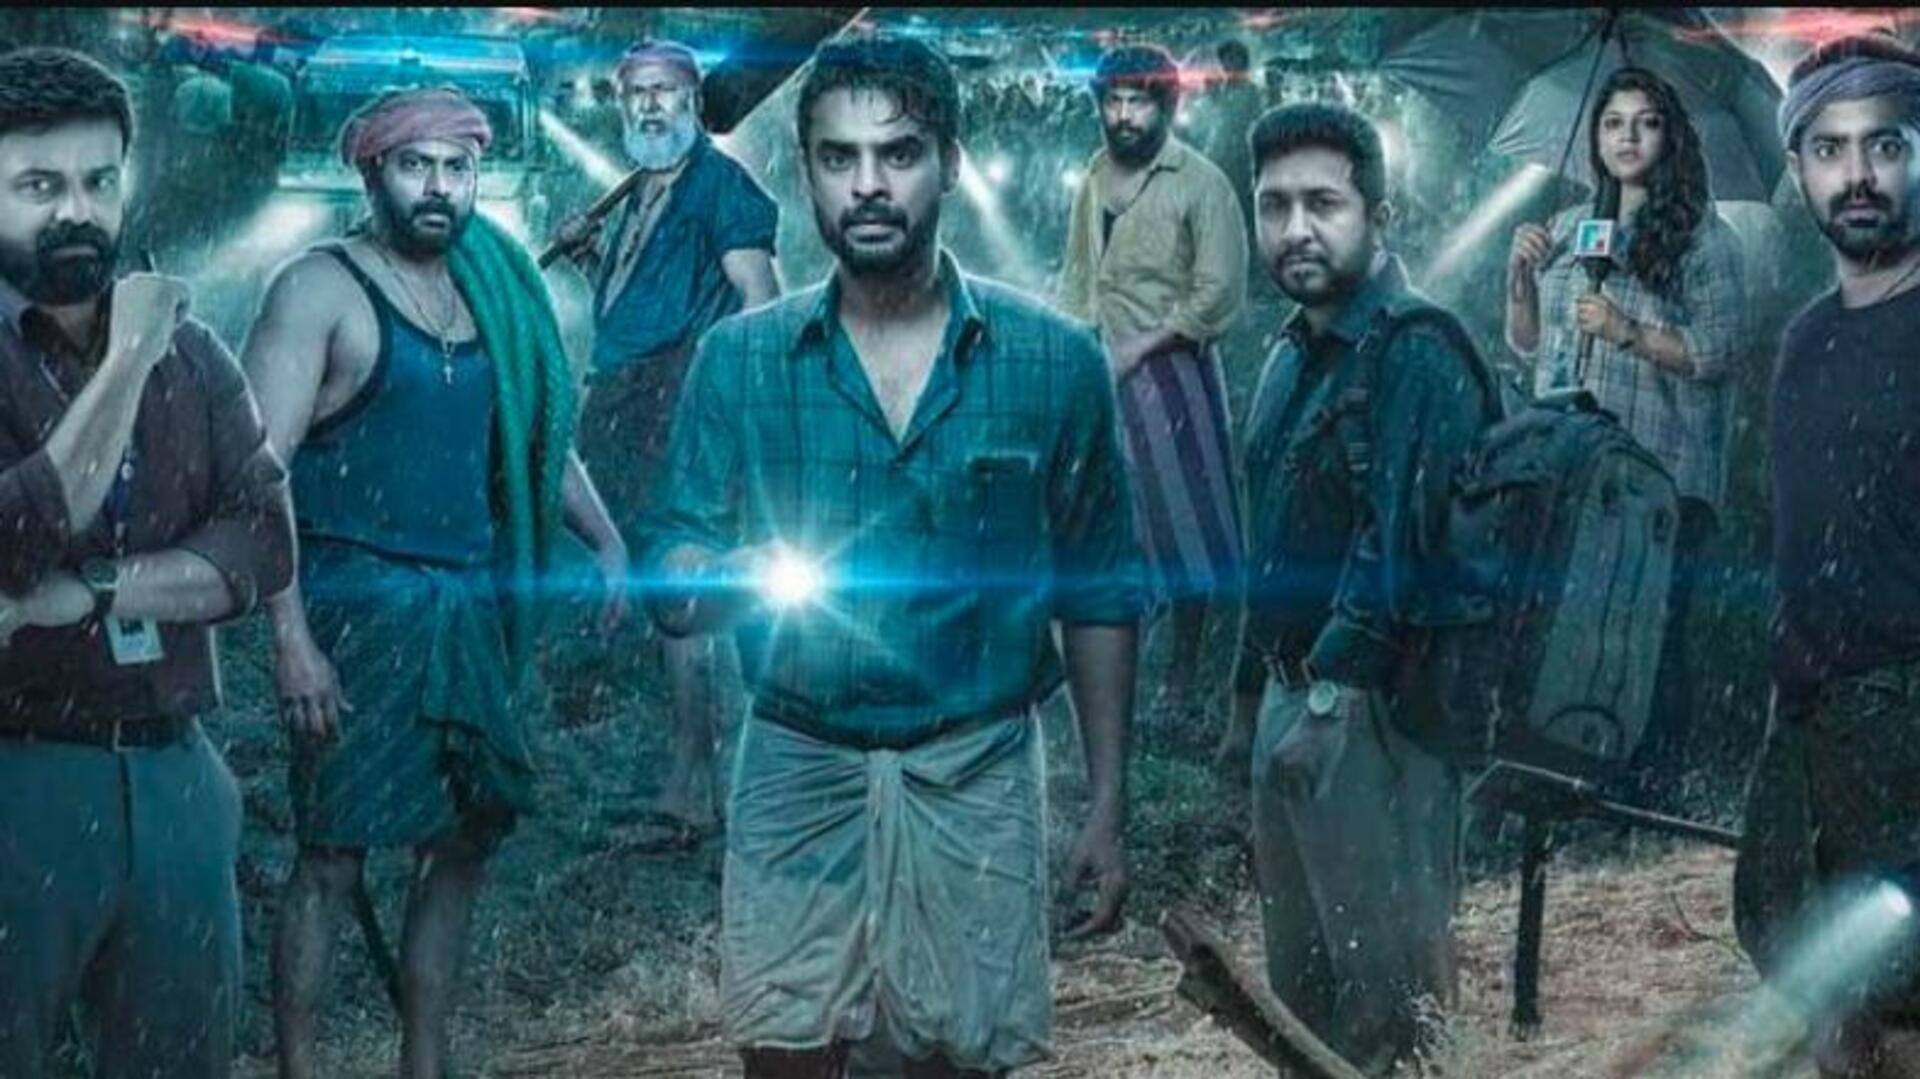 बॉक्स ऑफिस: मलयालम फिल्म '2018' का शानदार प्रदर्शन जारी, दुनियाभर में कमाए 160 करोड़ से अधिक 